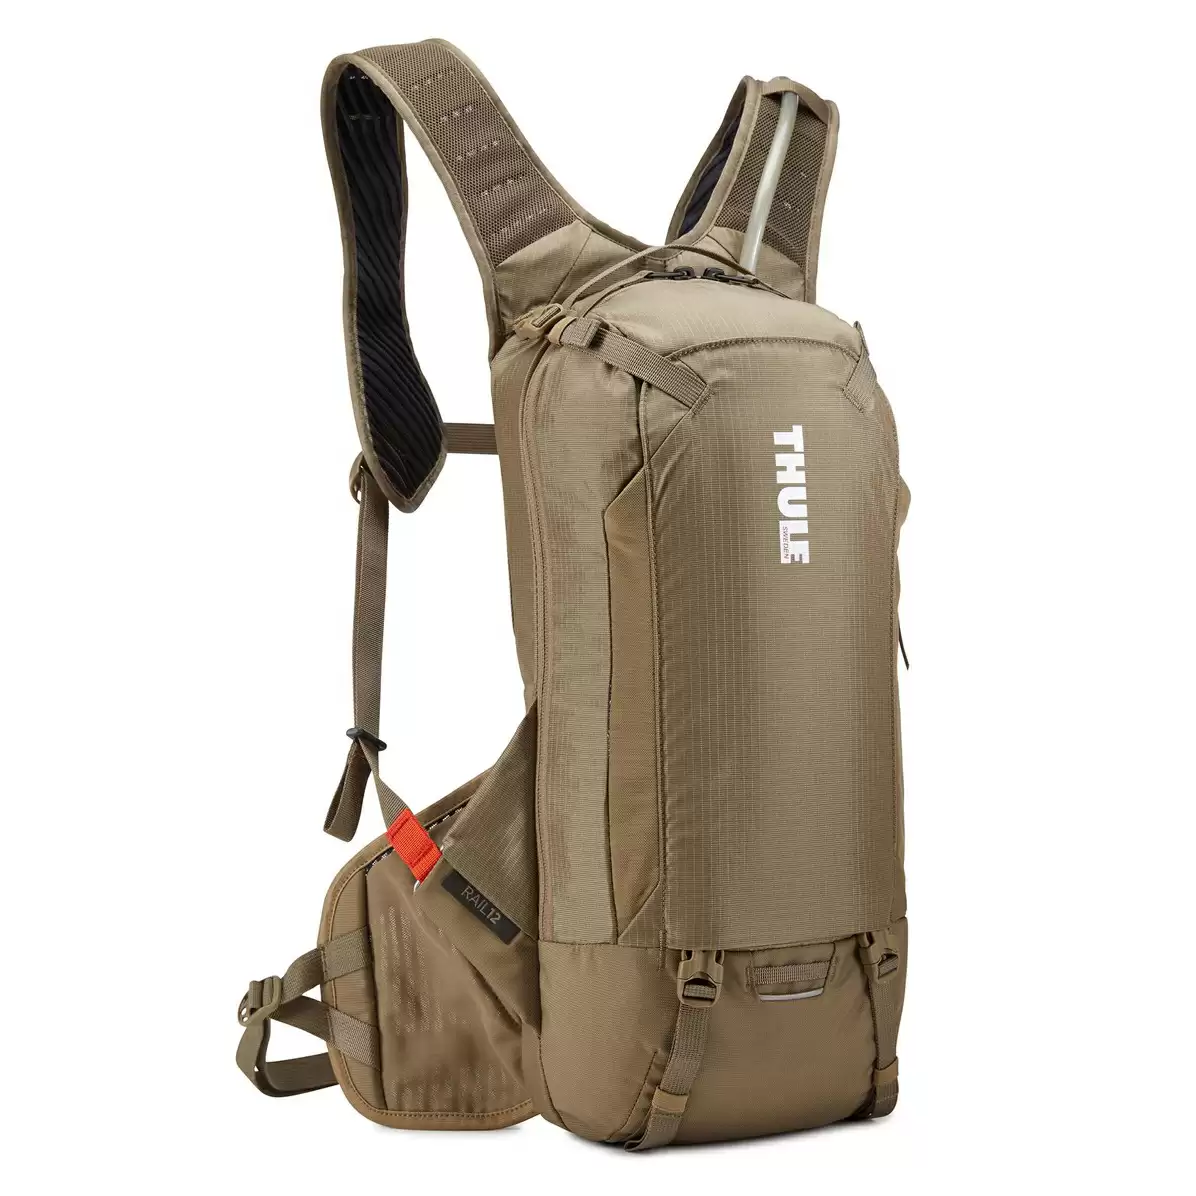 Water backpack Rail 12lt brown - image